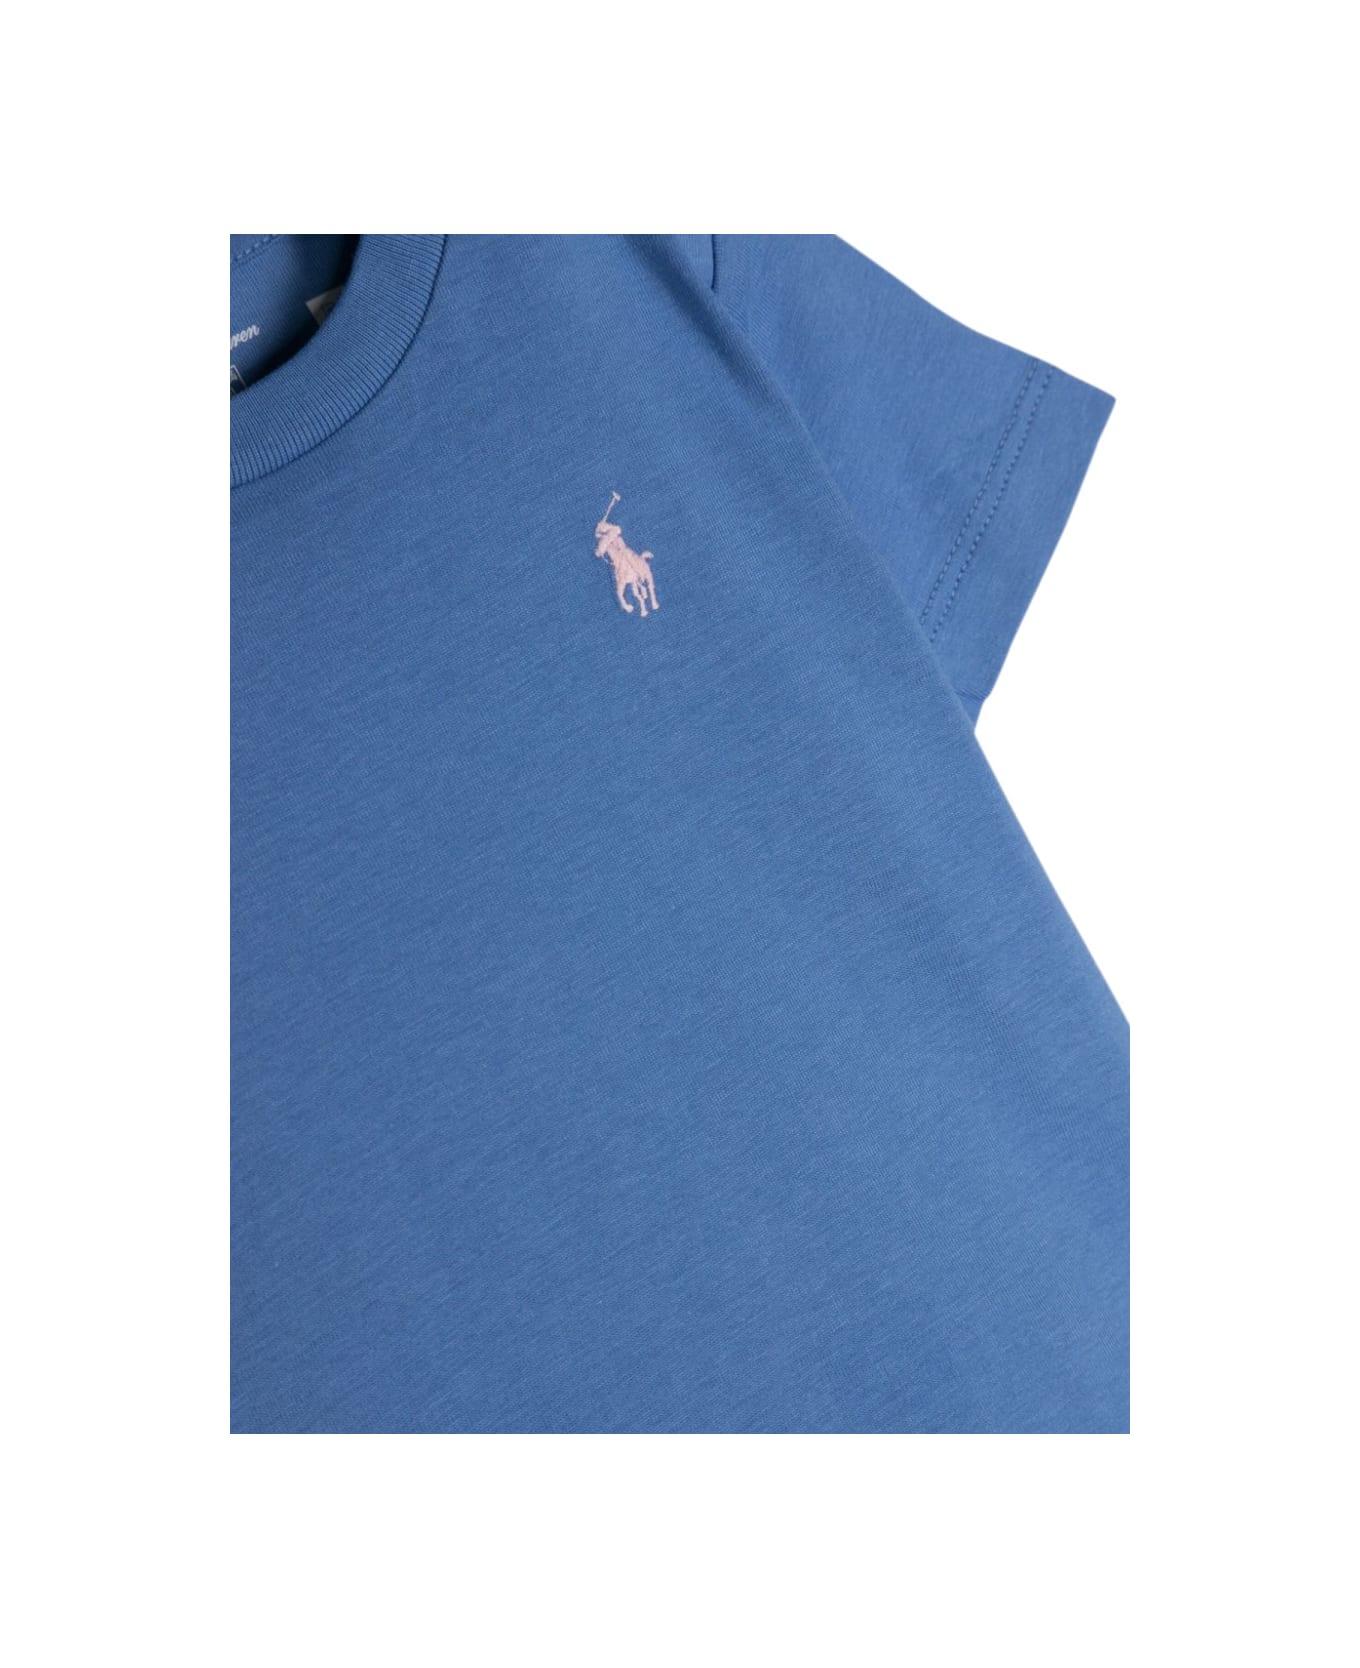 Ralph Lauren Ss Cn-tops-t-shirt - BLUE